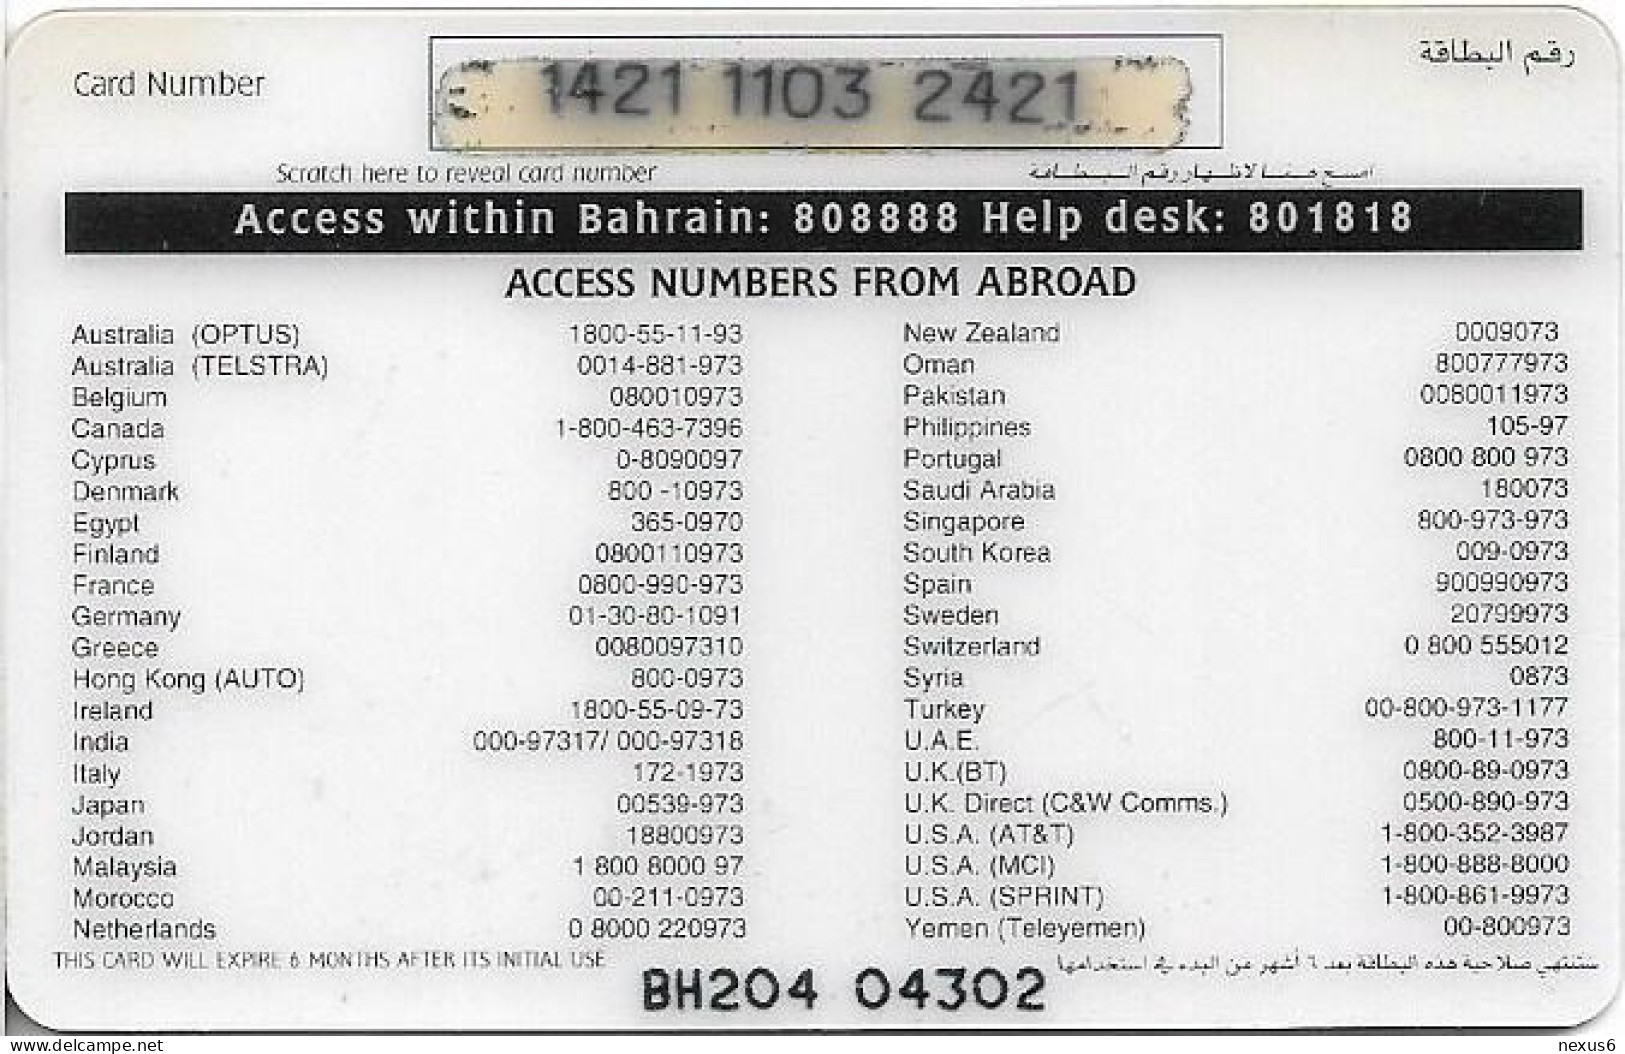 Bahrain - Batelco - Delmon Seal #1, 3BD Prepaid Card, Used - Bahrain